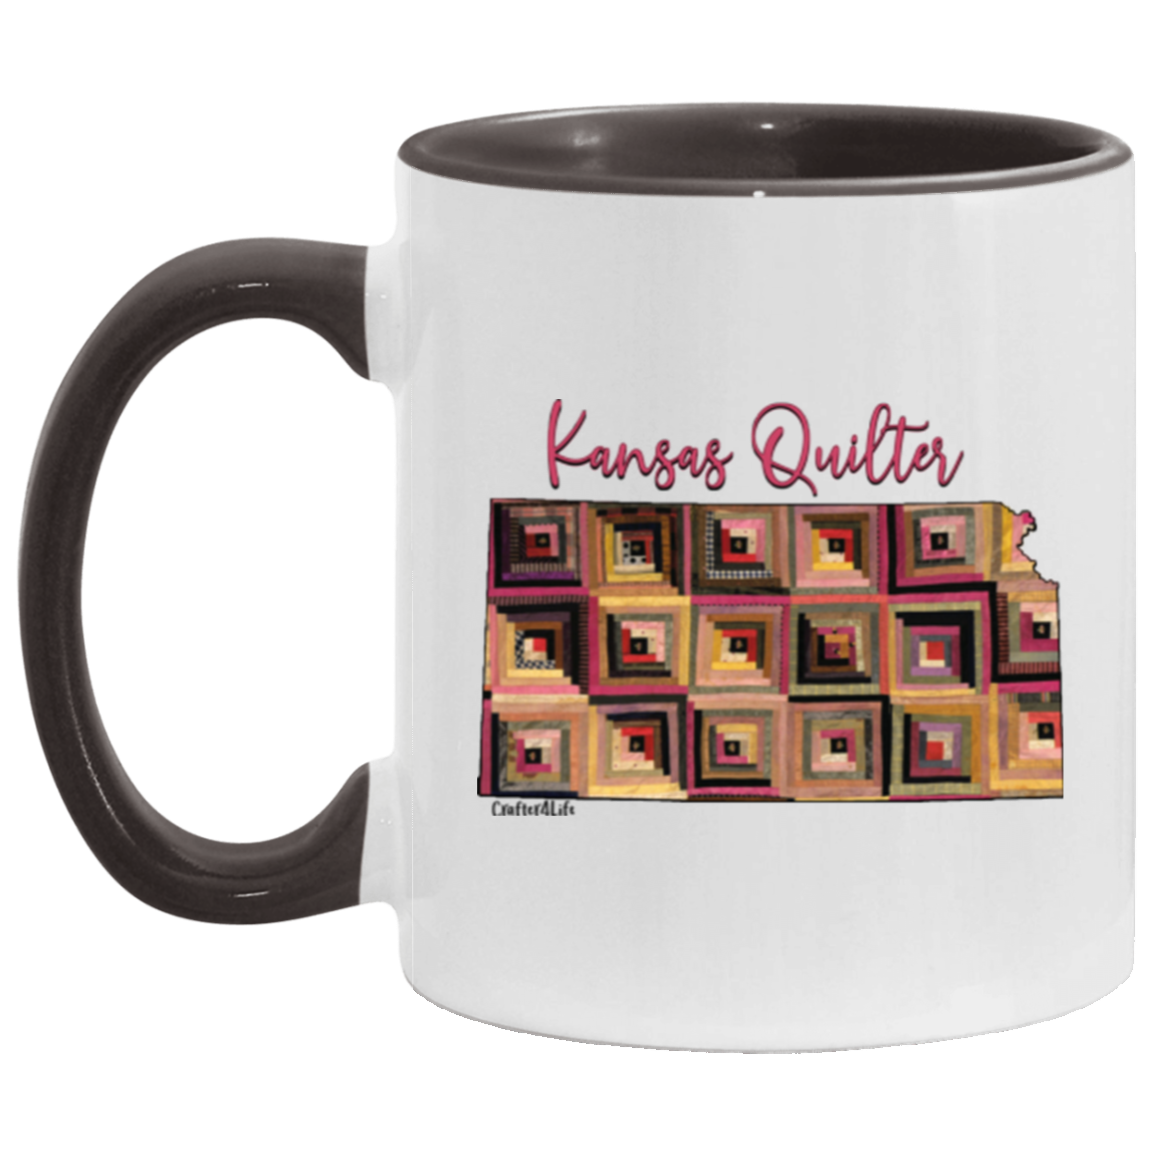 Kansas Quilter Mugs